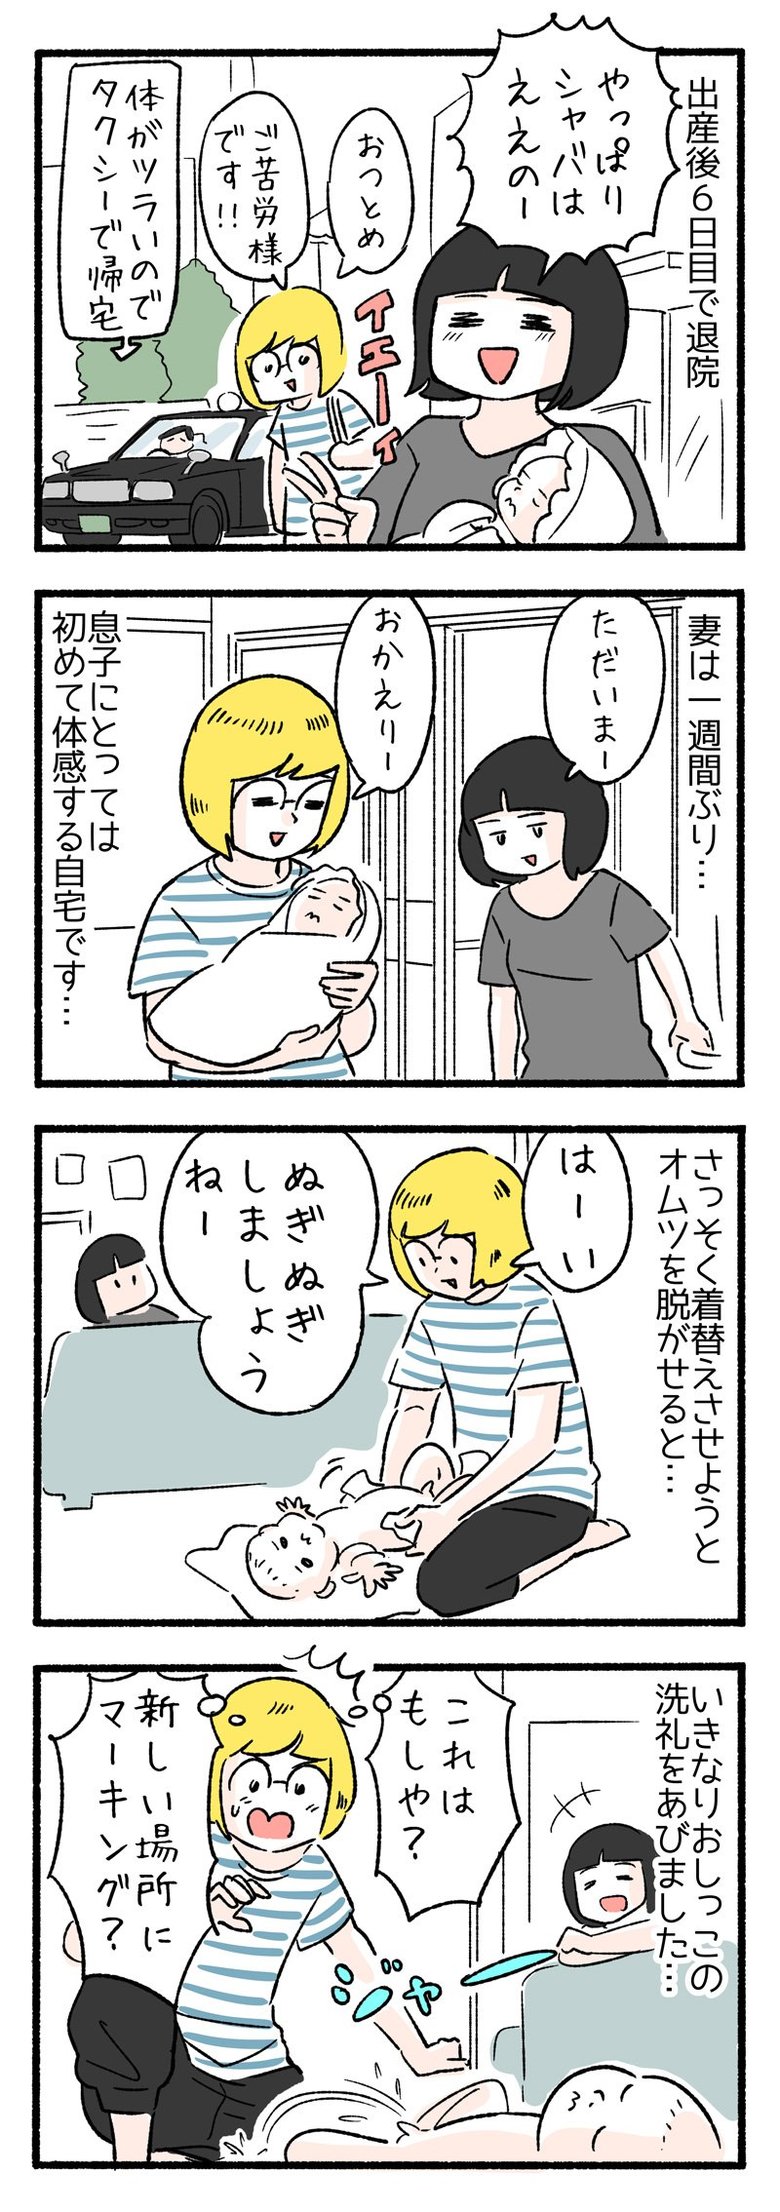 manga-nihipapa7-1sai